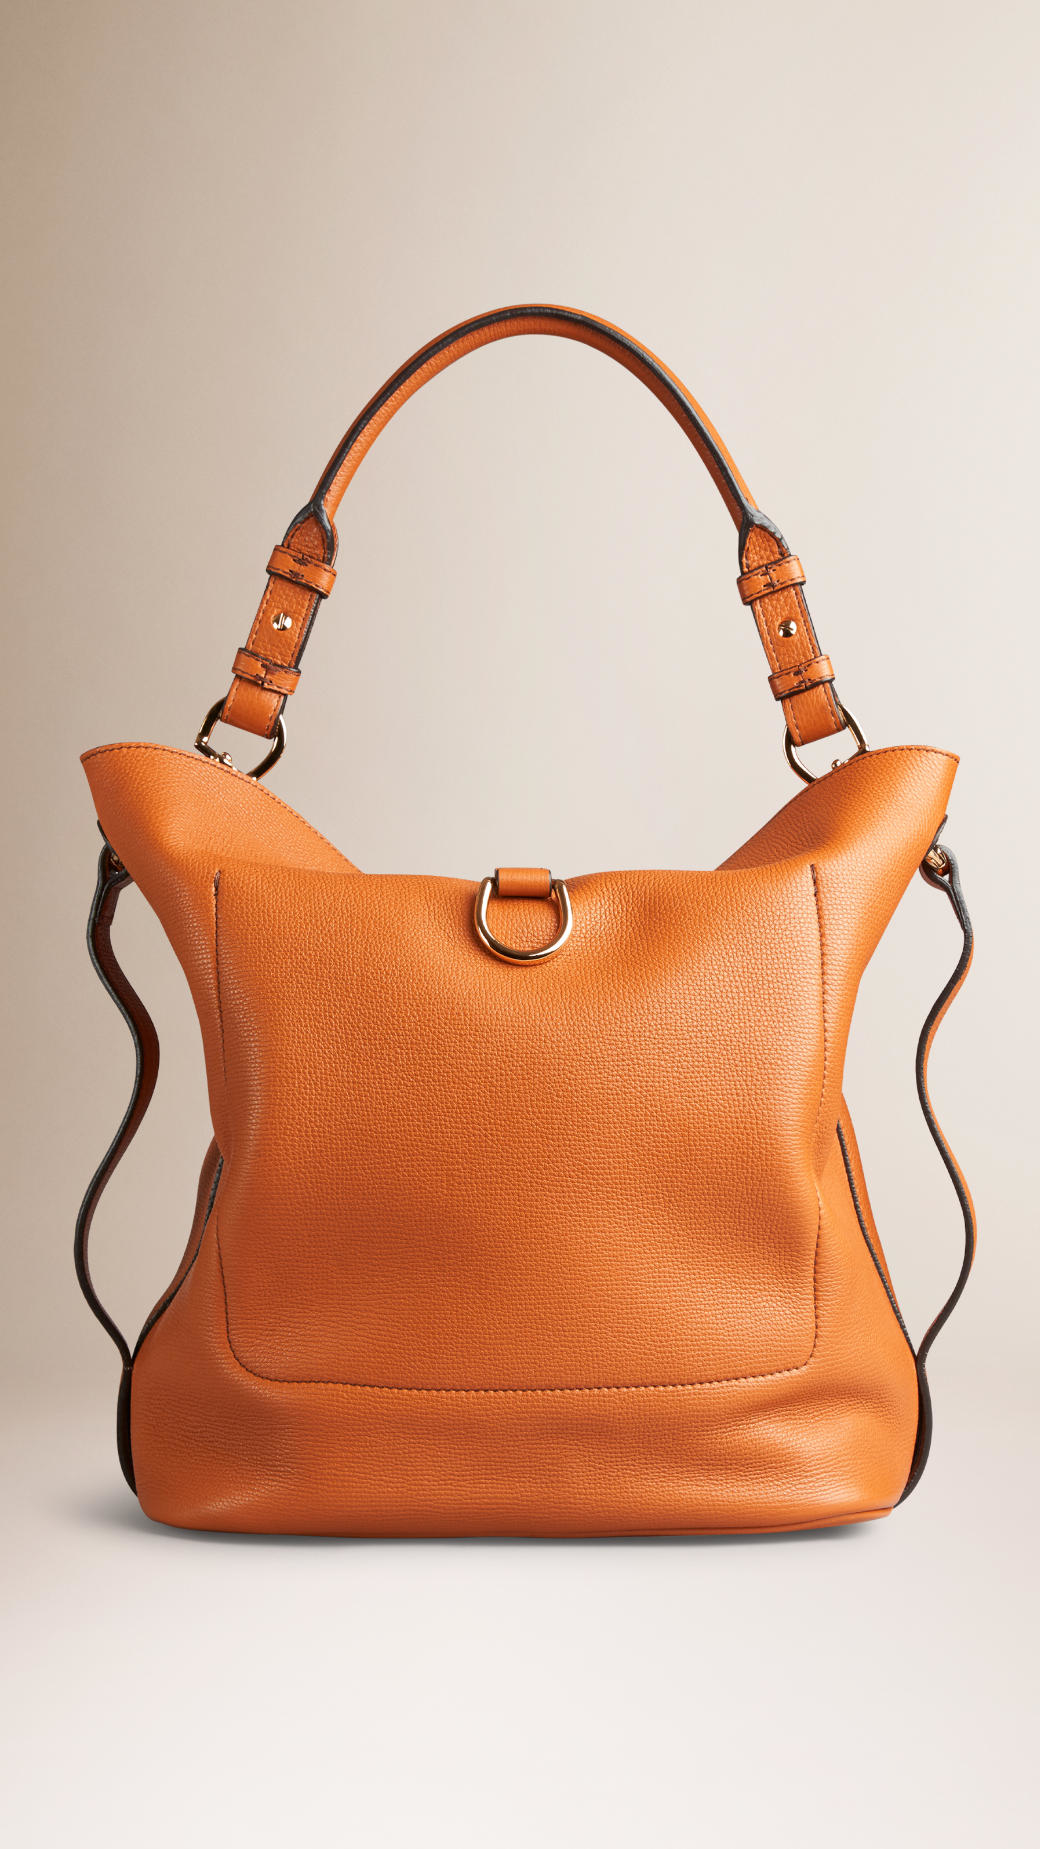 Burberry Medium Buckle Detail Leather Hobo Bag in Cognac (Brown) | Lyst